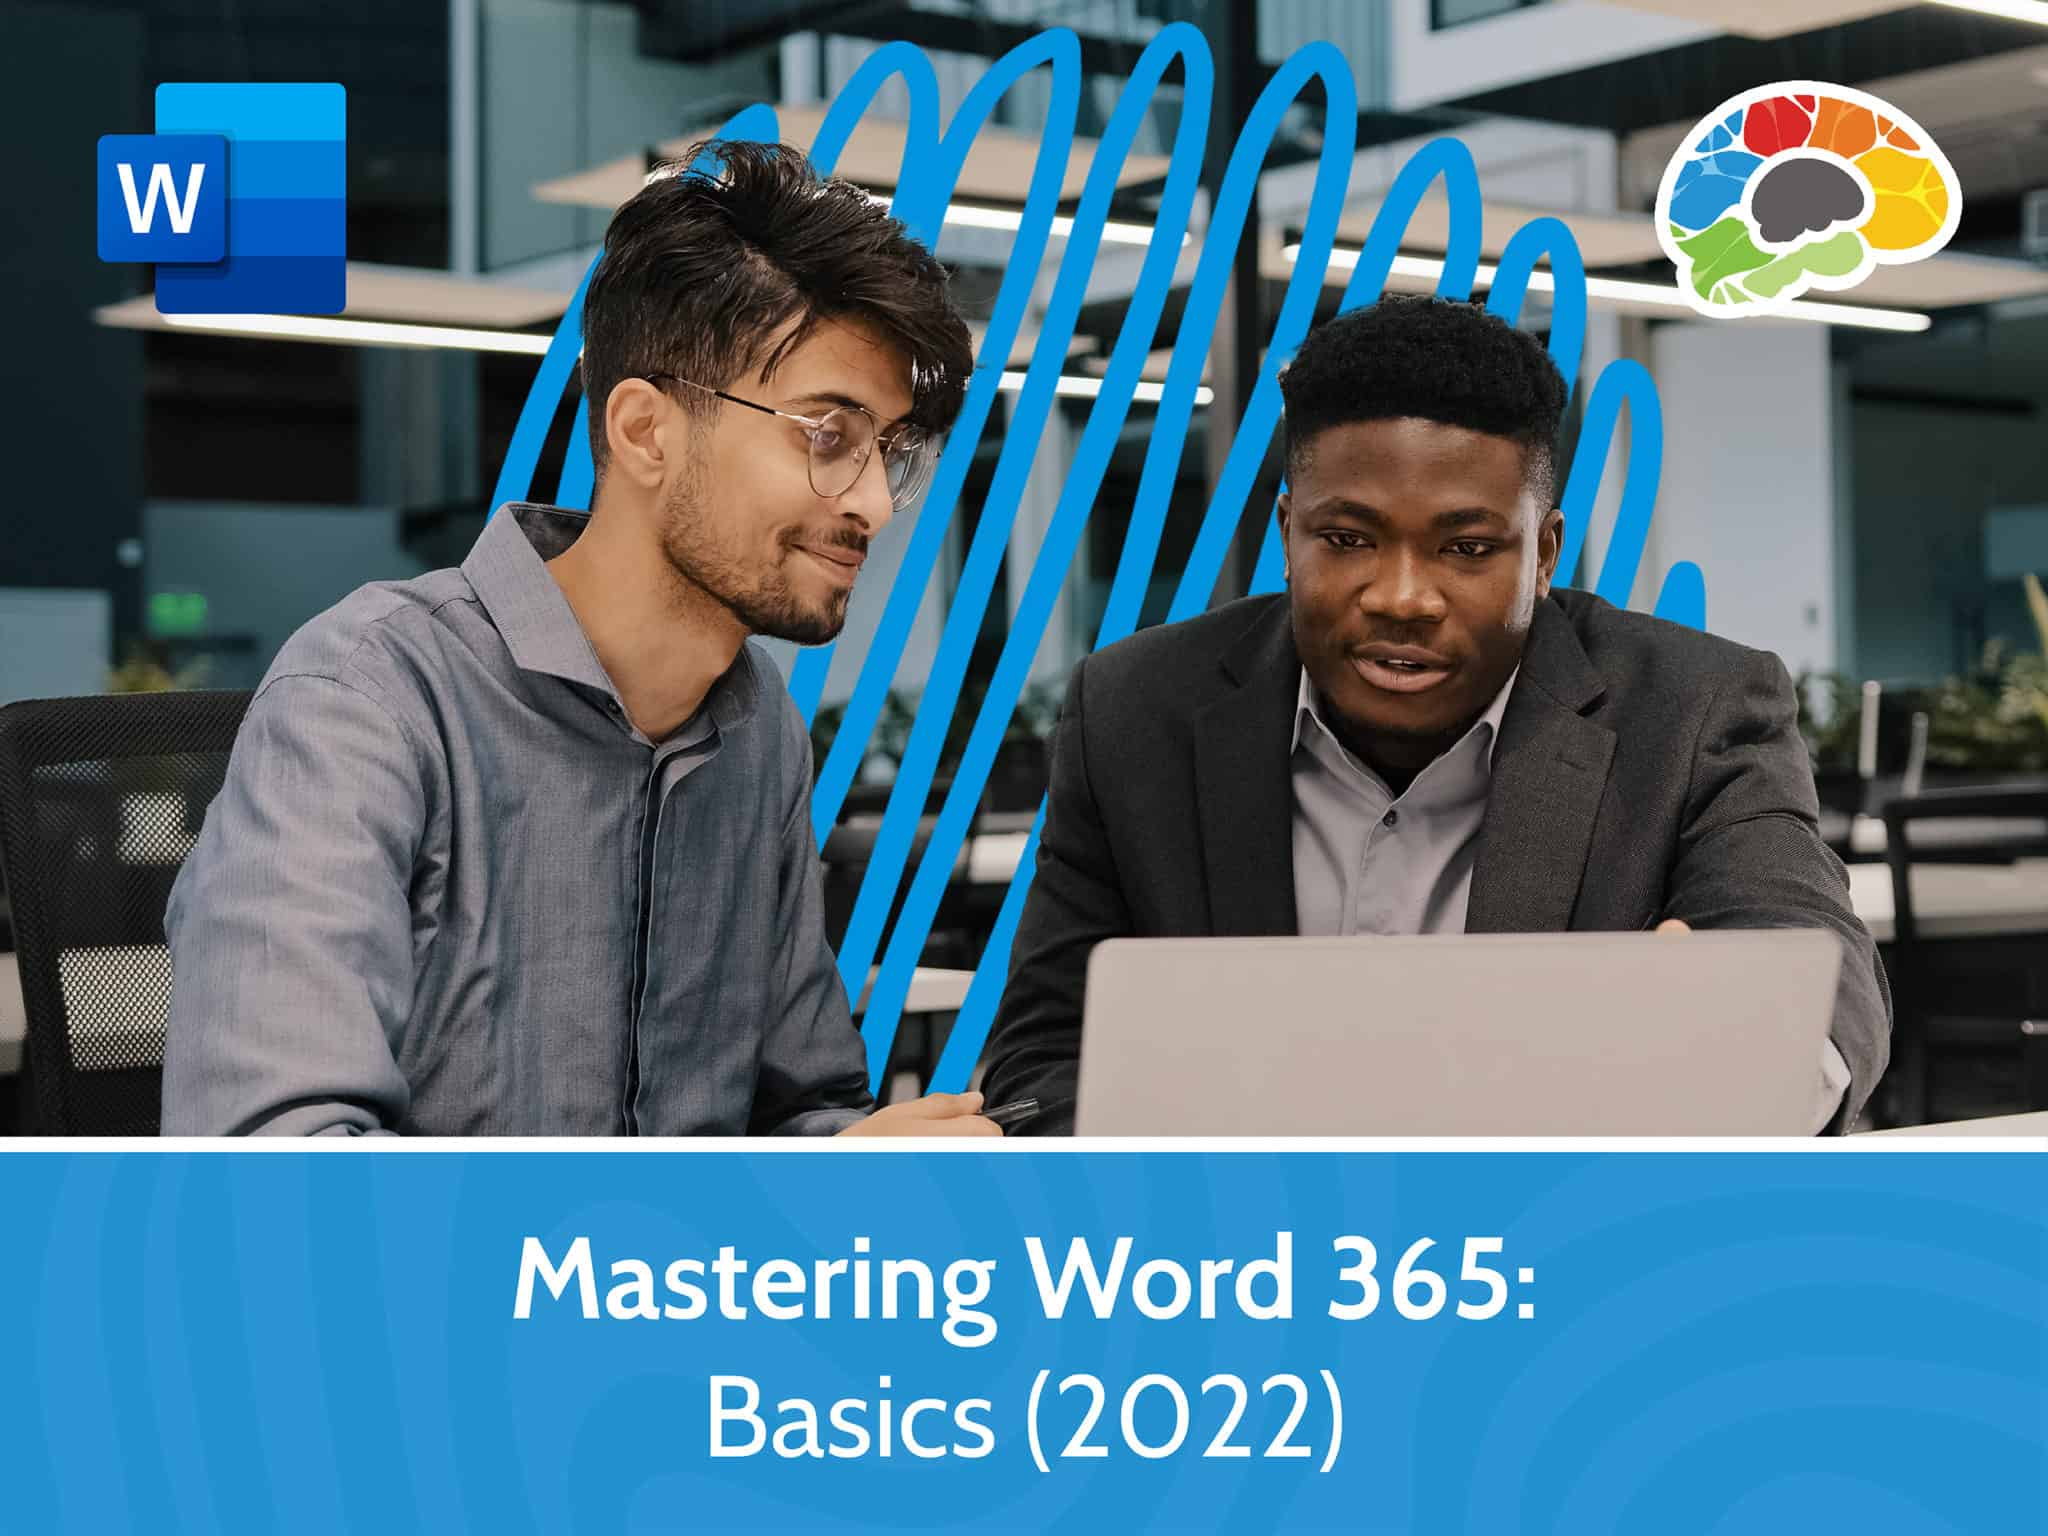 Mastering Word 365 – Basics 2022 scaled